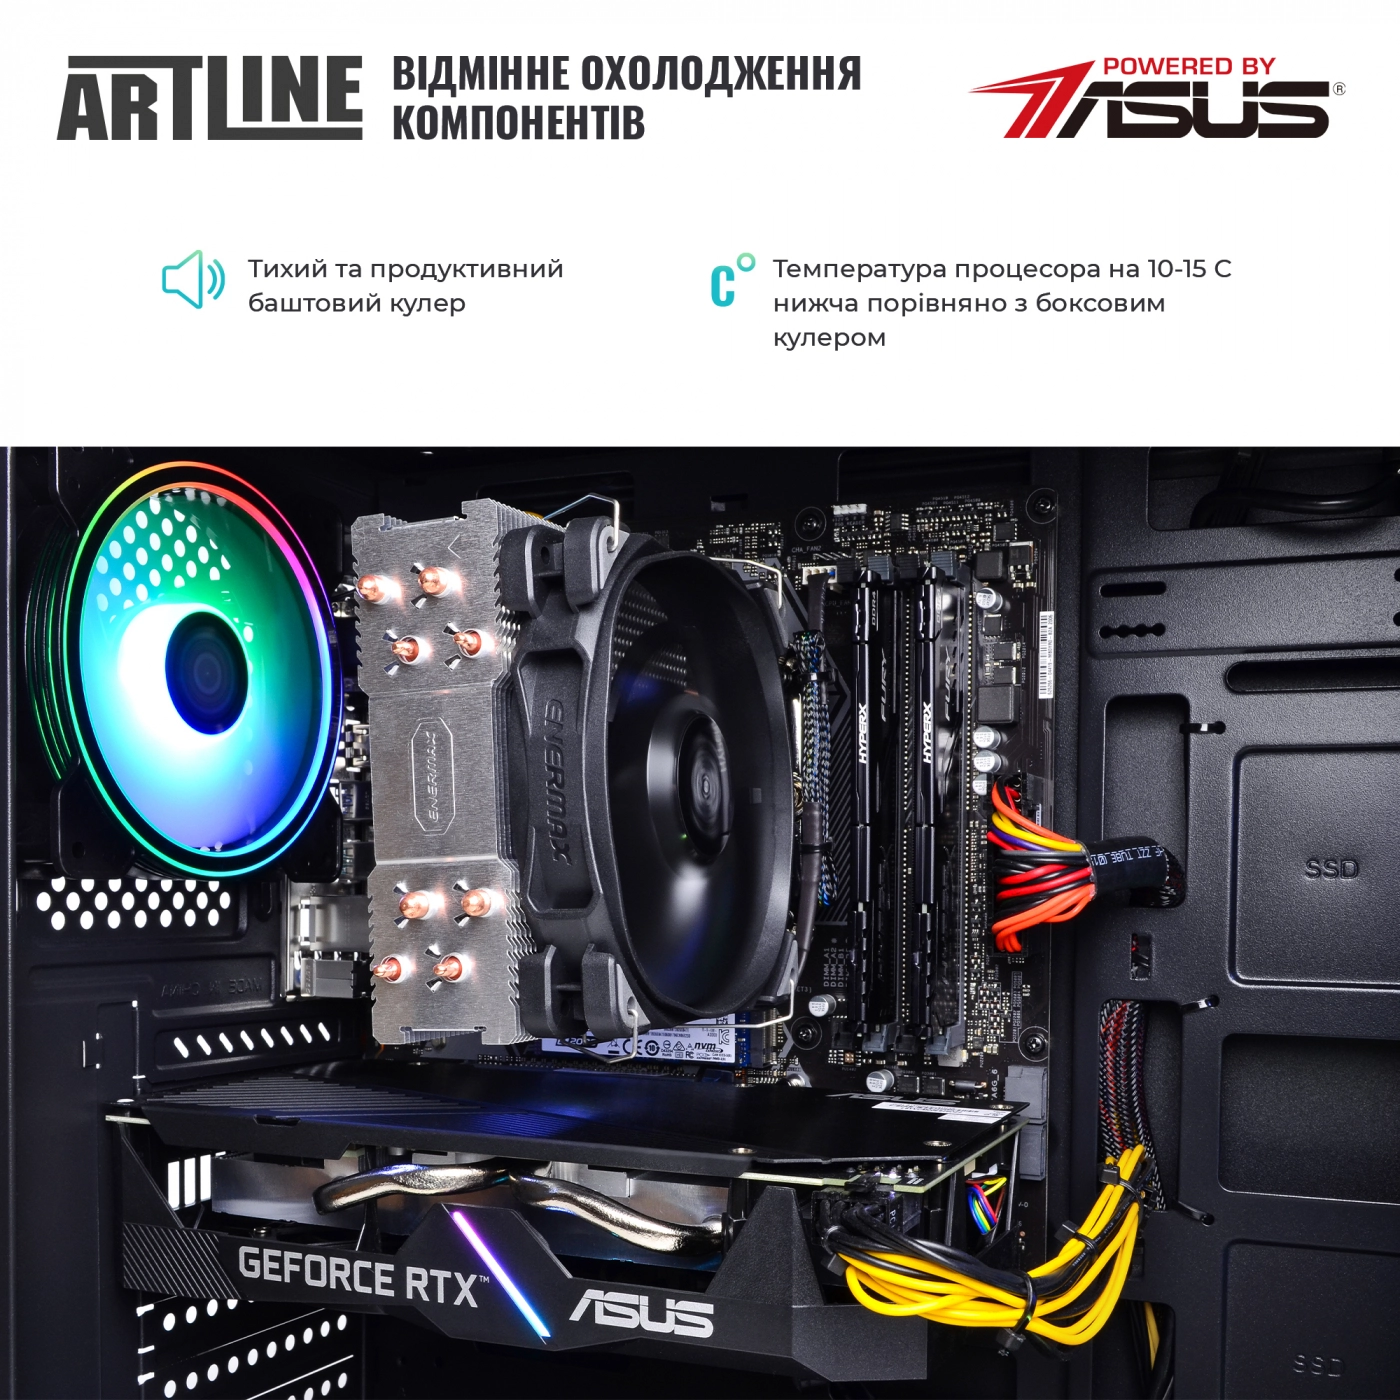 Купить Компьютер ARTLINE Gaming X73v11 - фото 7